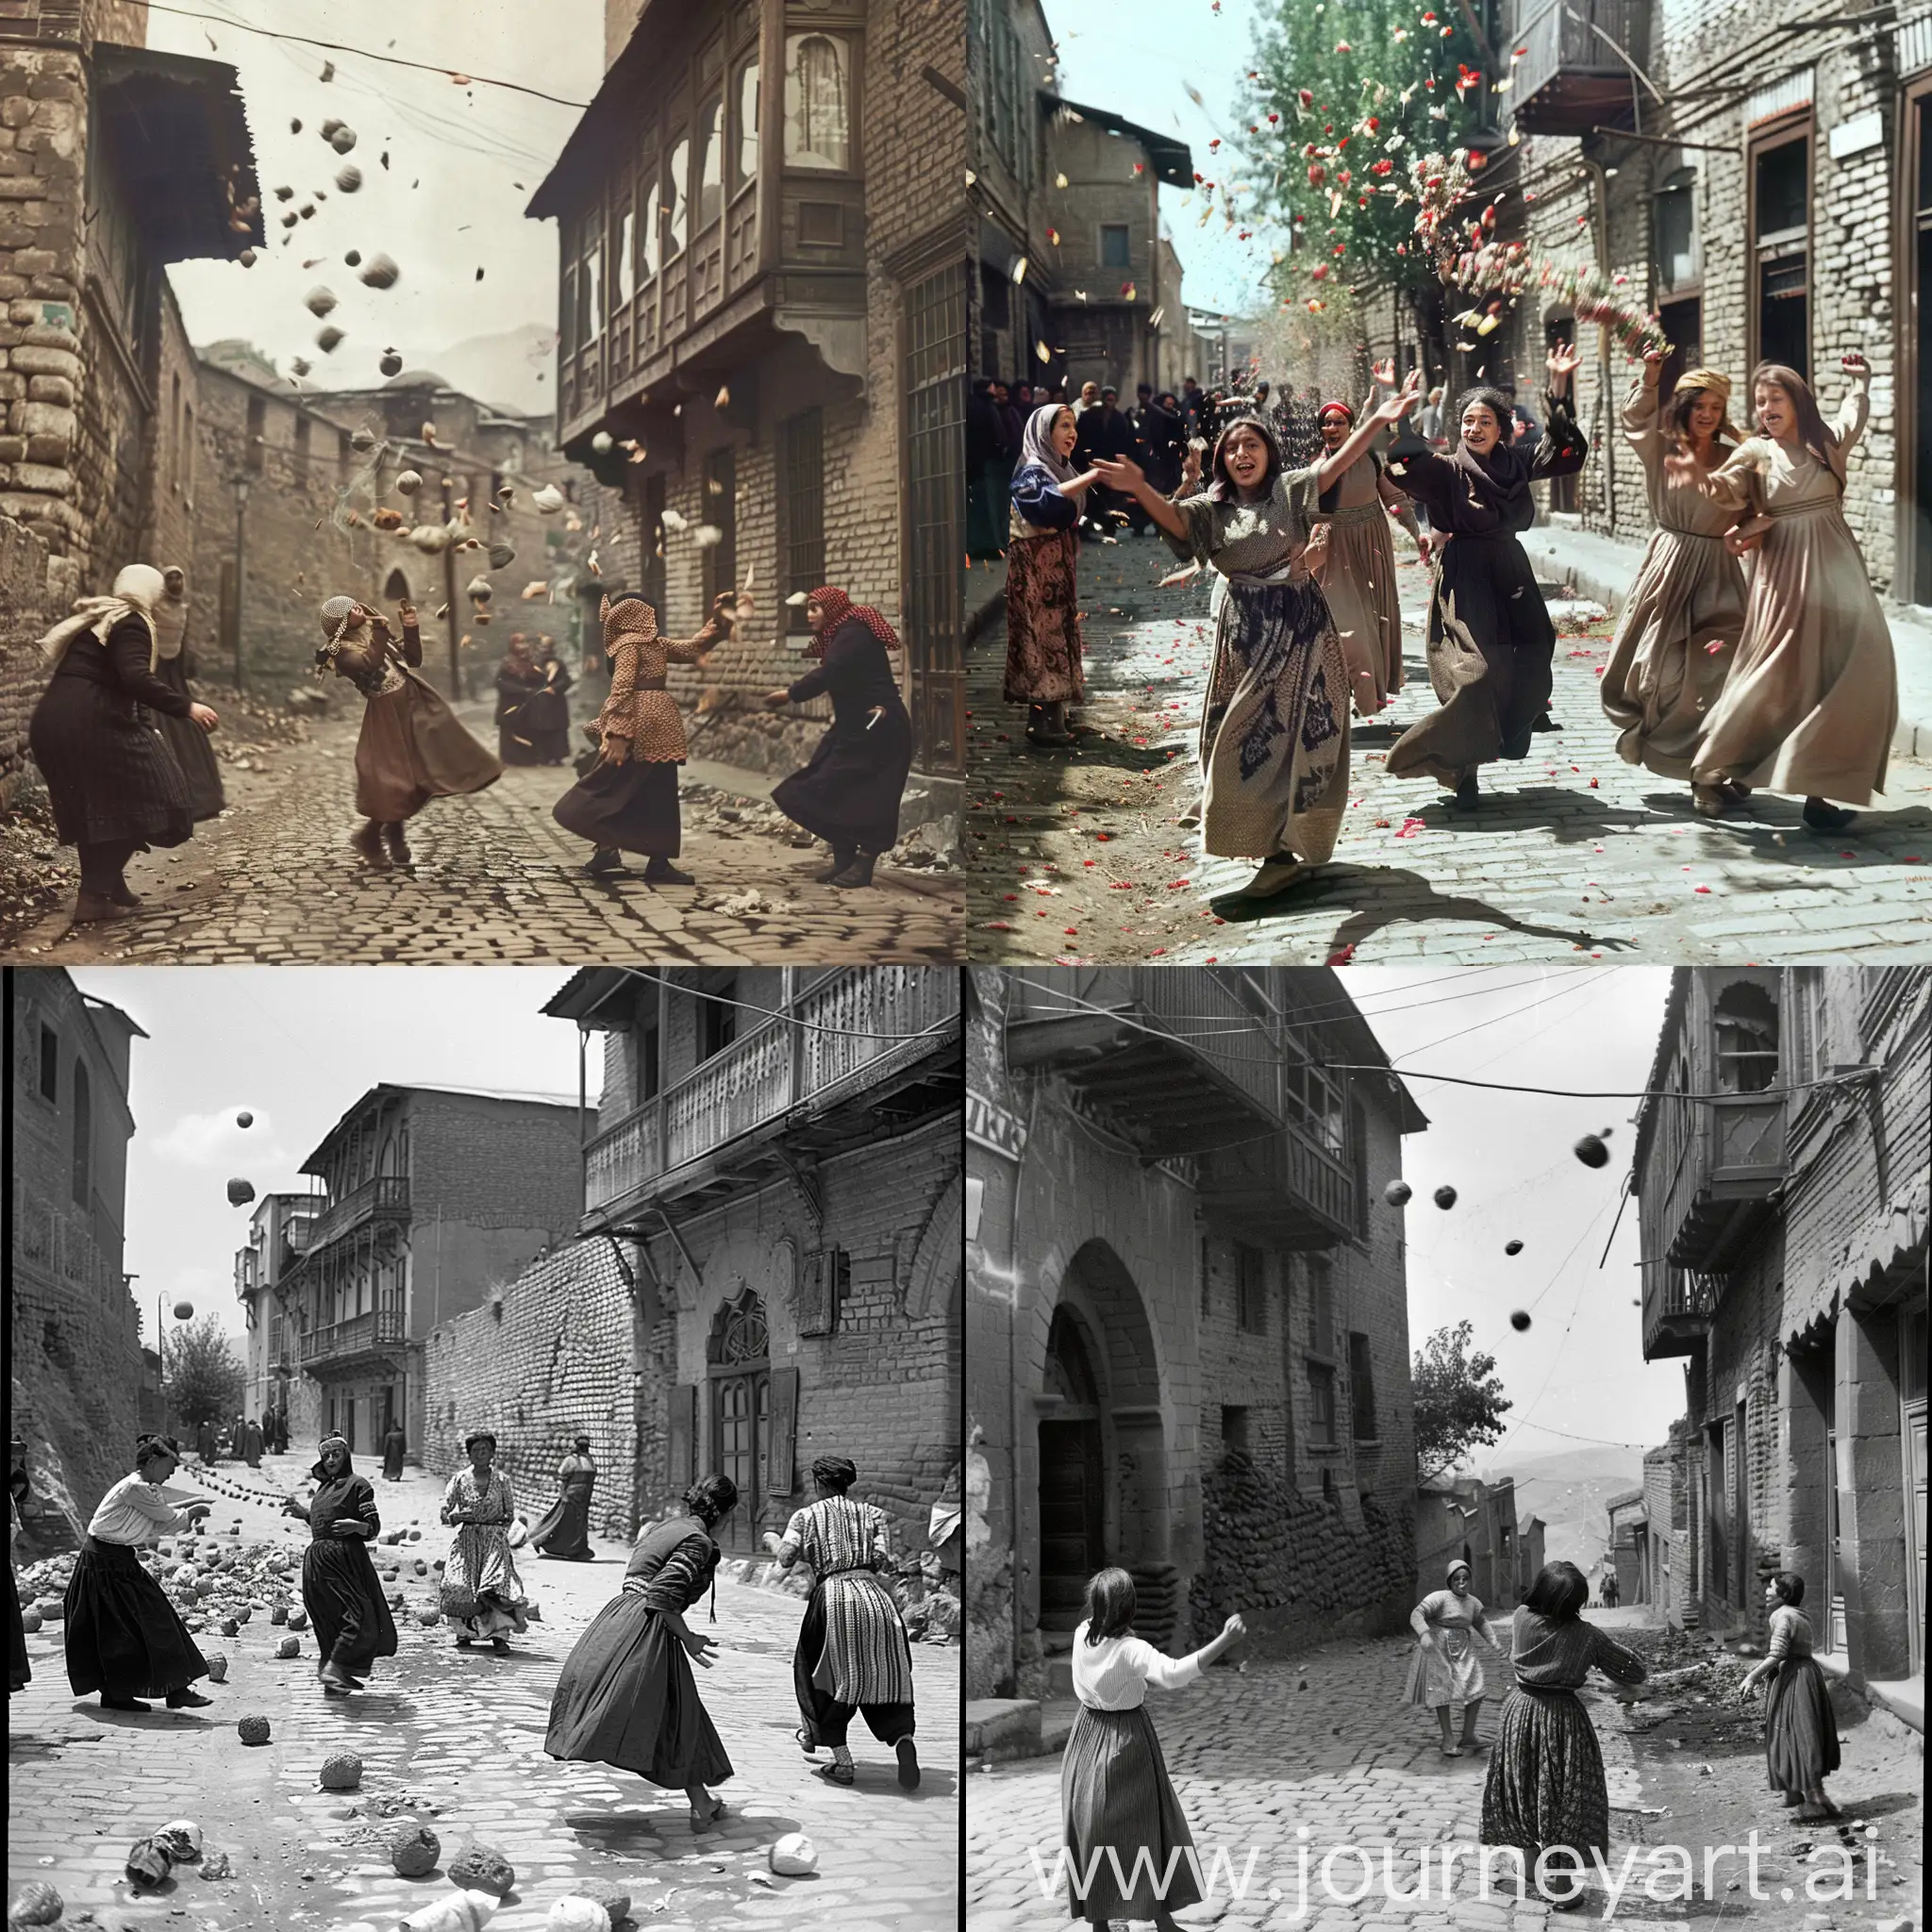 Traditional-Kurdish-Women-Dancing-in-Old-Tiflis-Street